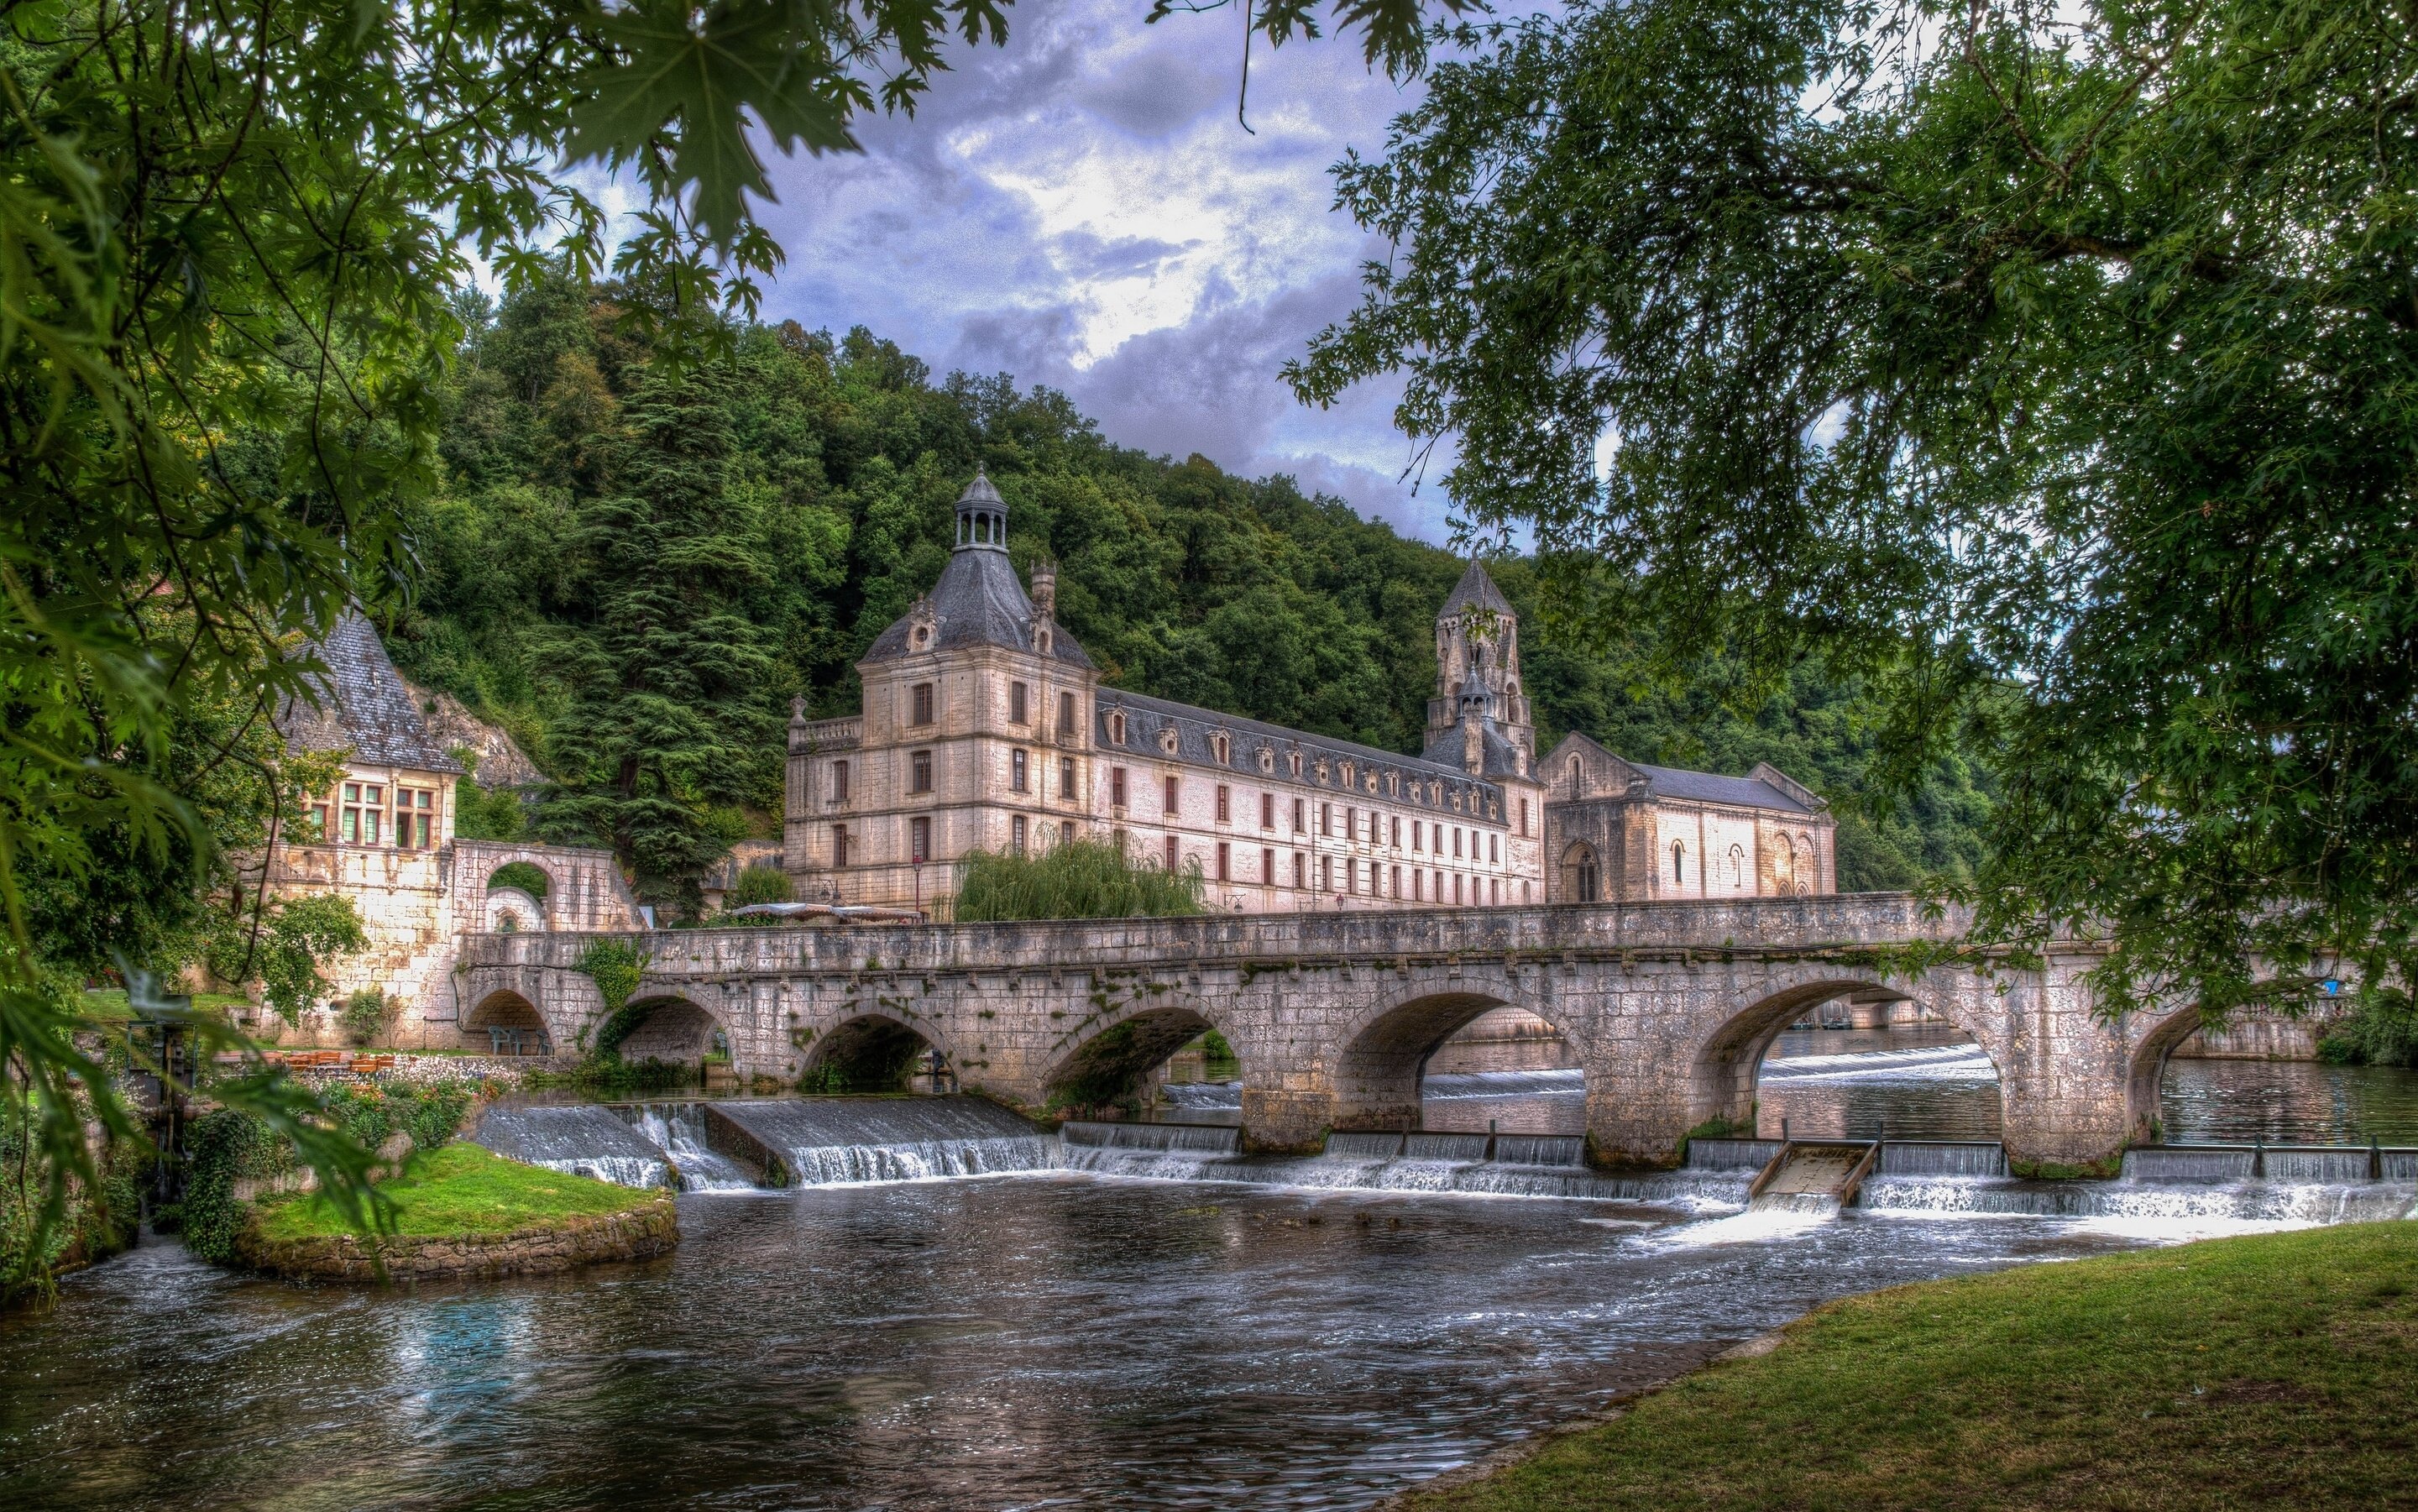 dordogne, River, Brantome, France, The, Dordogne, River, The, Abbey, Bridge, River Wallpaper